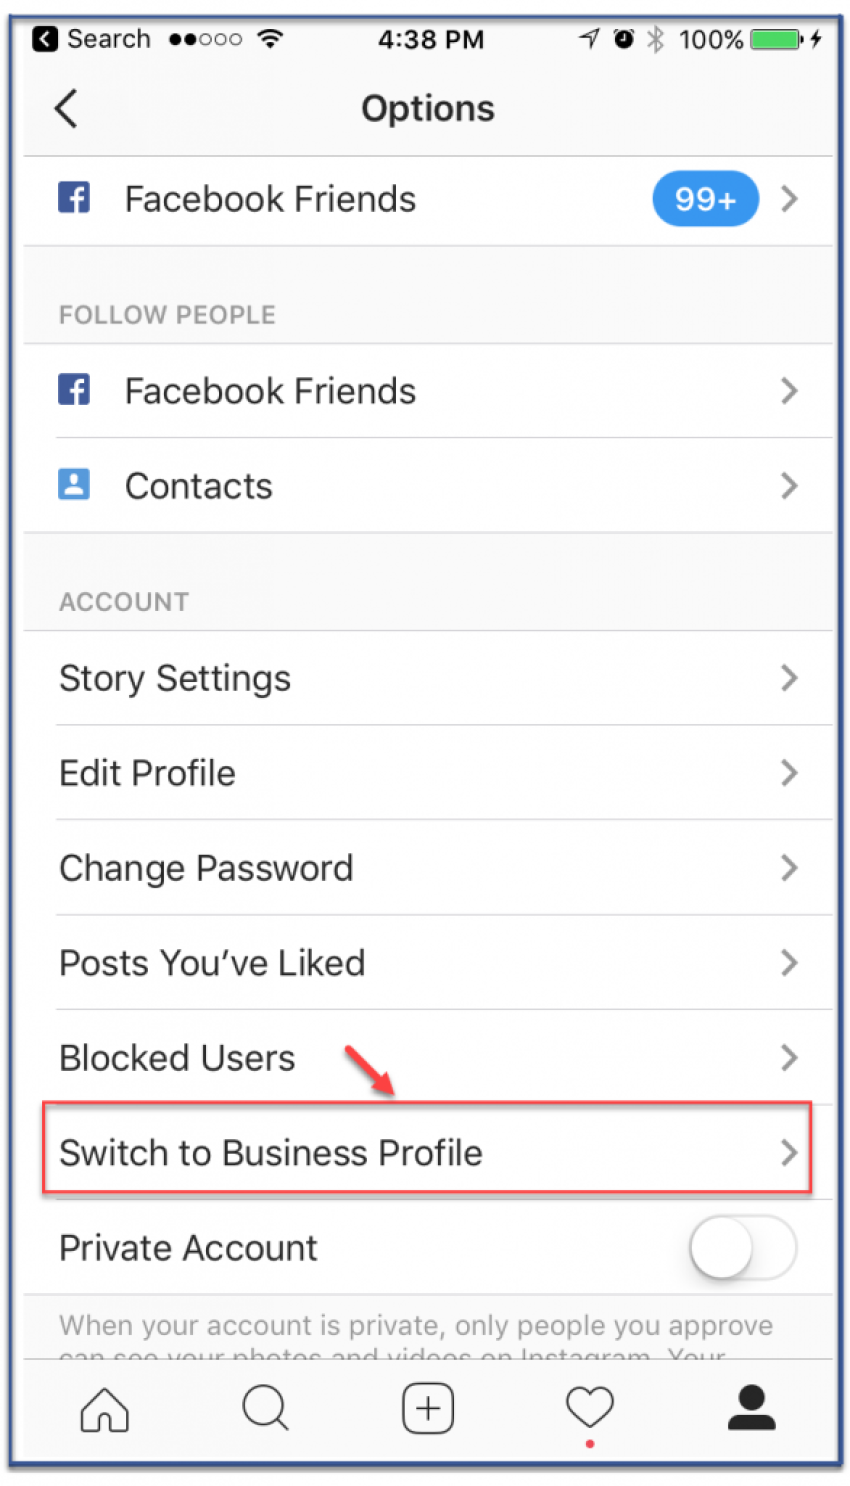 Lưu ý: Tài khoản hồ sơ doanh nghiệp chỉ có thể kết nối với một fanpage Facebook.